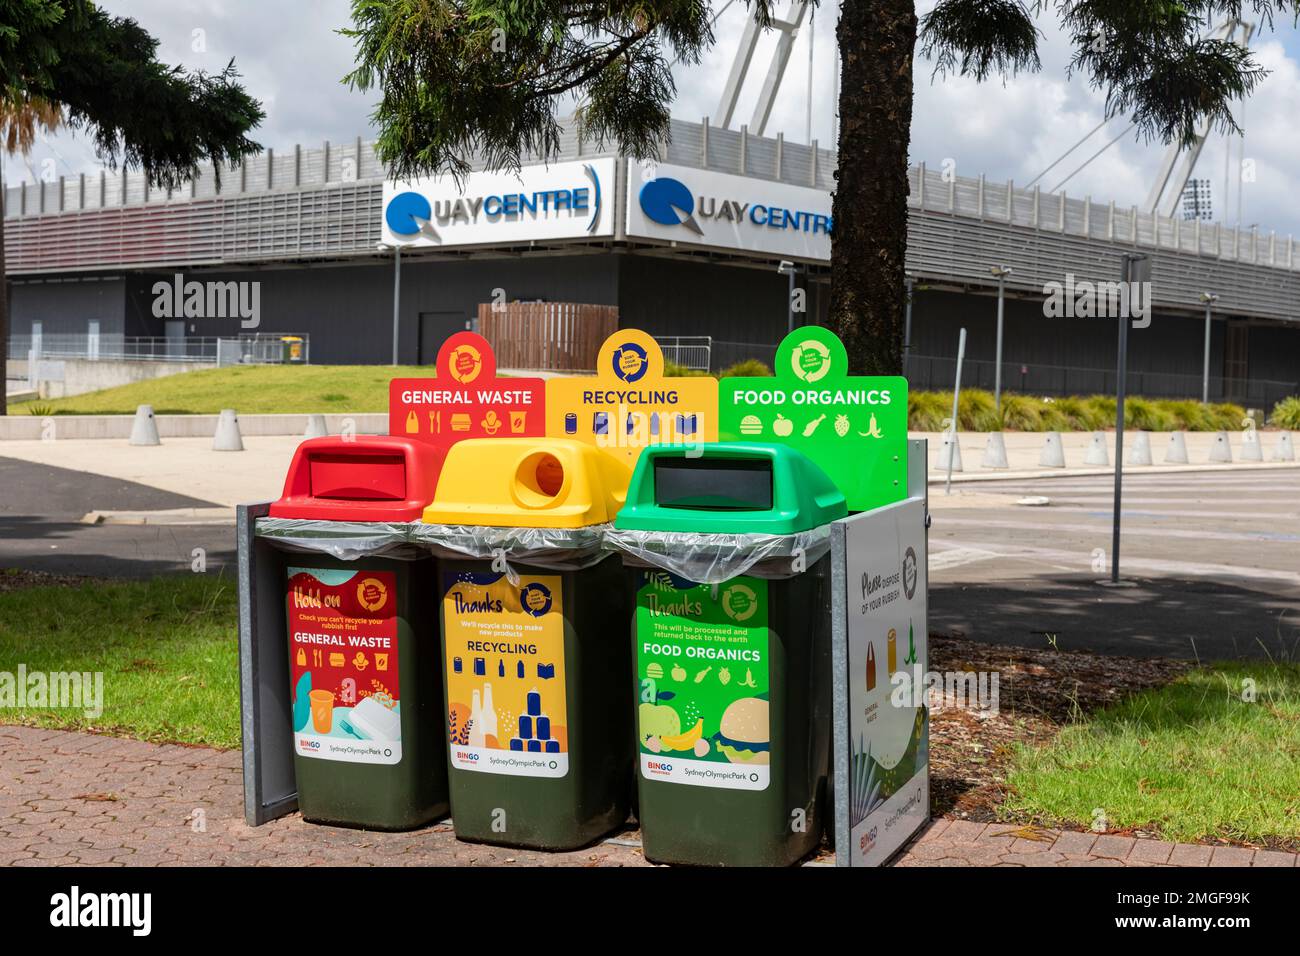 Bacs de recyclage, parc olympique de Sydney, recyclage des produits organiques alimentaires, recyclage du verre et des canettes et poubelles pour déchets généraux, Australie Banque D'Images